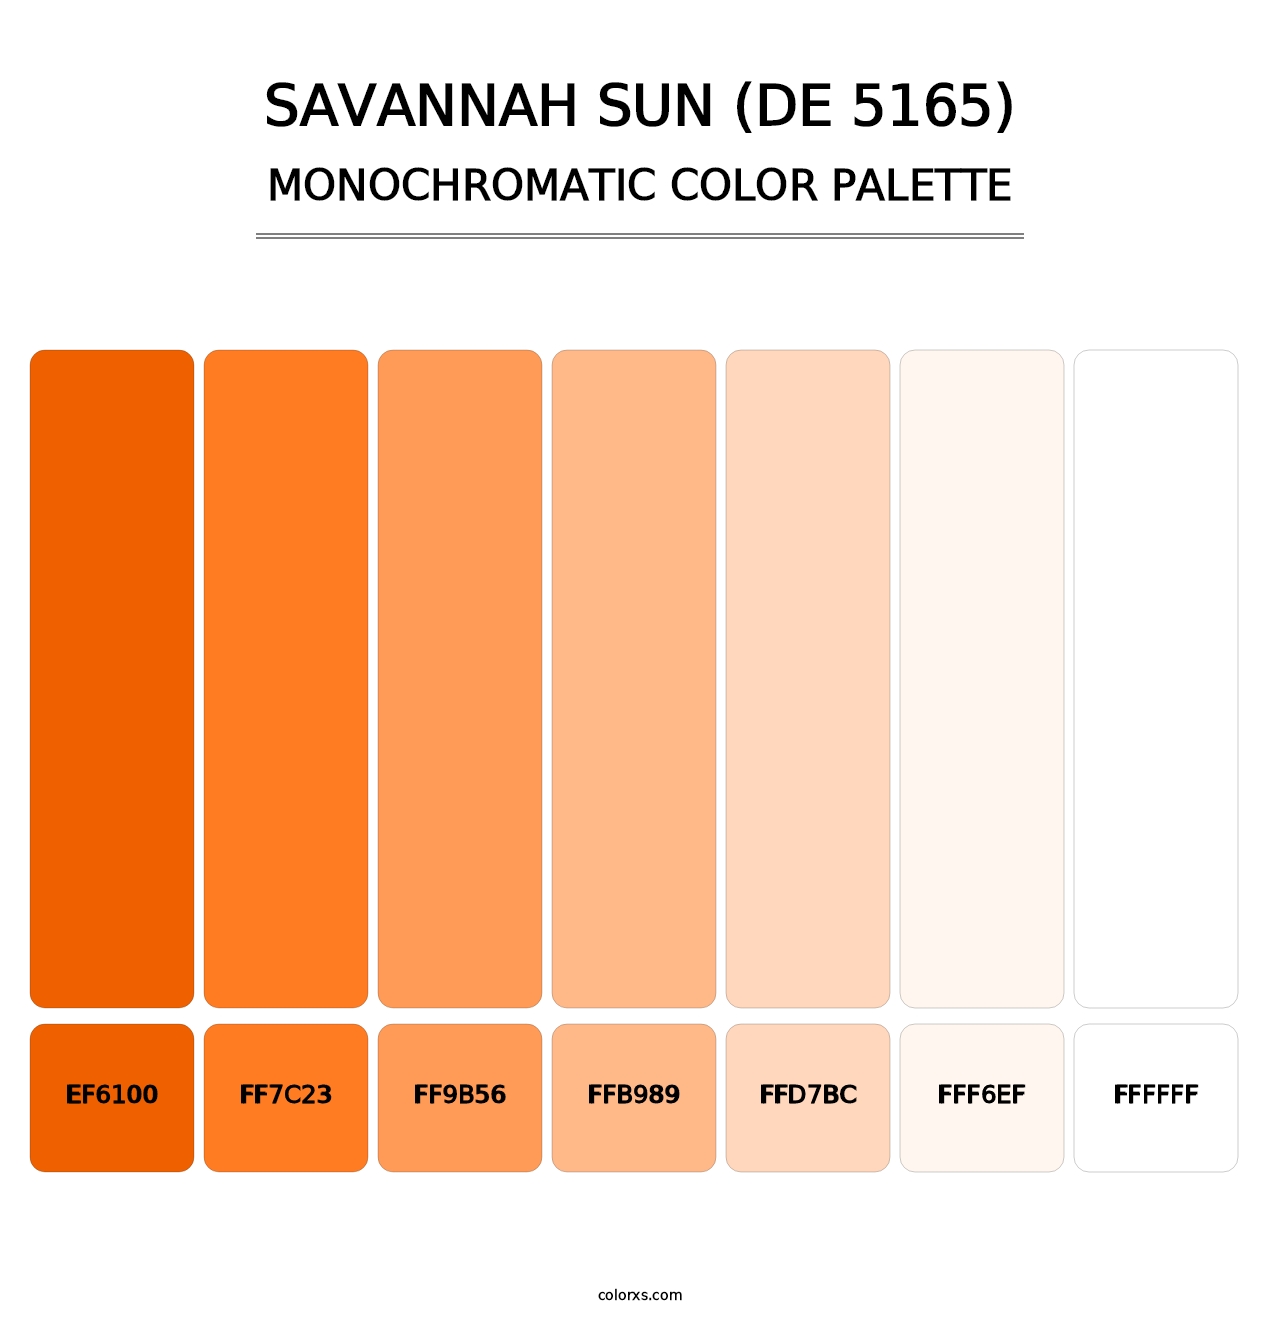 Savannah Sun (DE 5165) - Monochromatic Color Palette